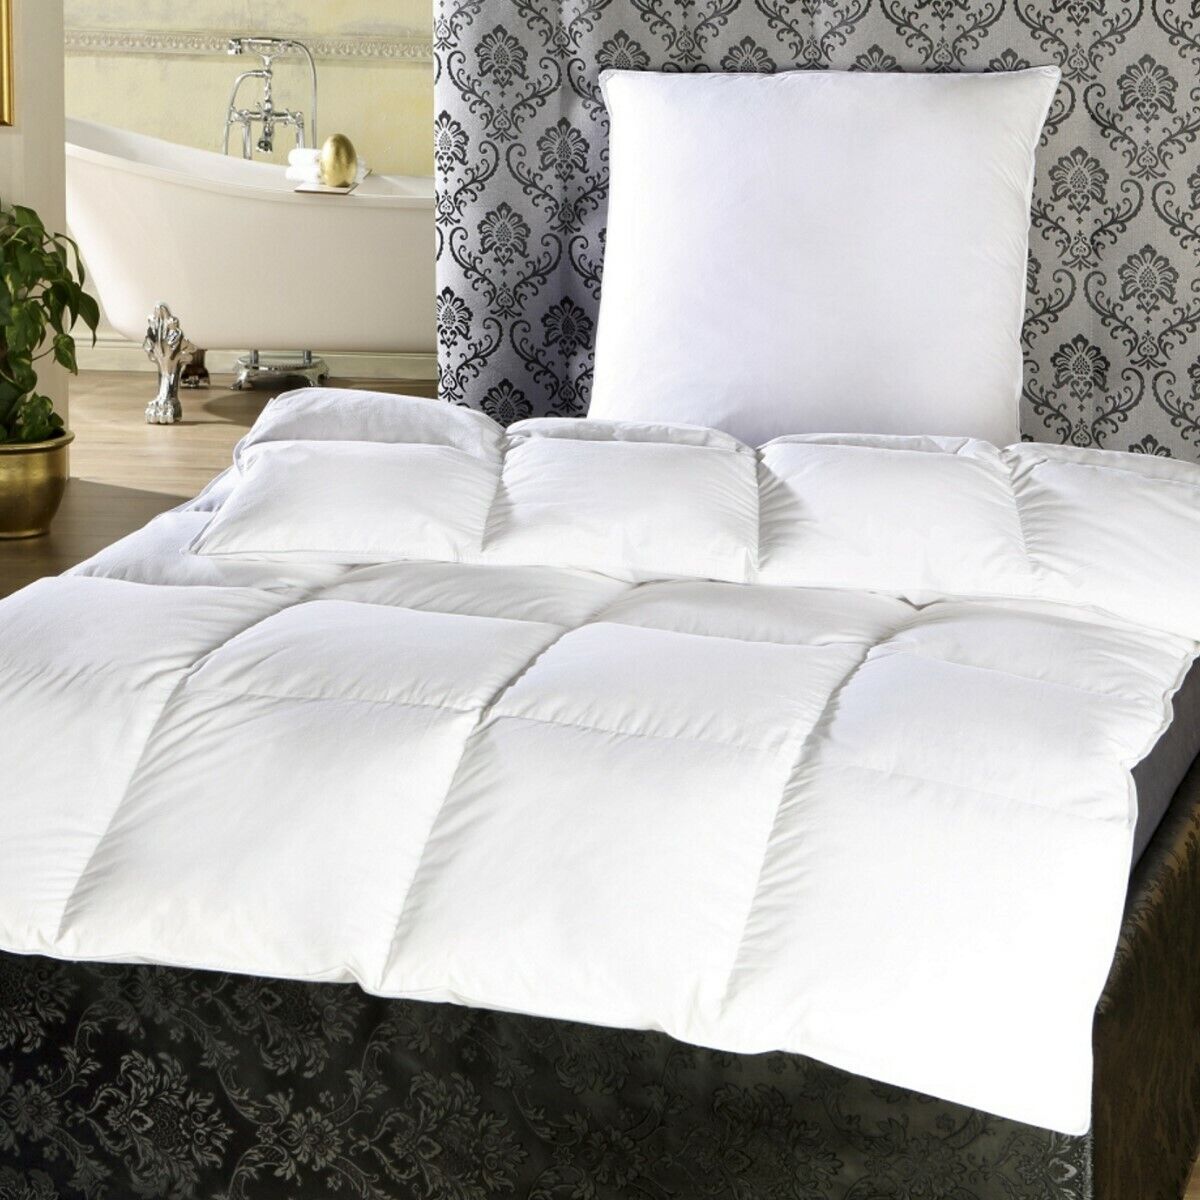 Duscher Betten-Set Feder Daunen Decke Bettdecke 135x200cm + Kopfkissen 80x80 cm